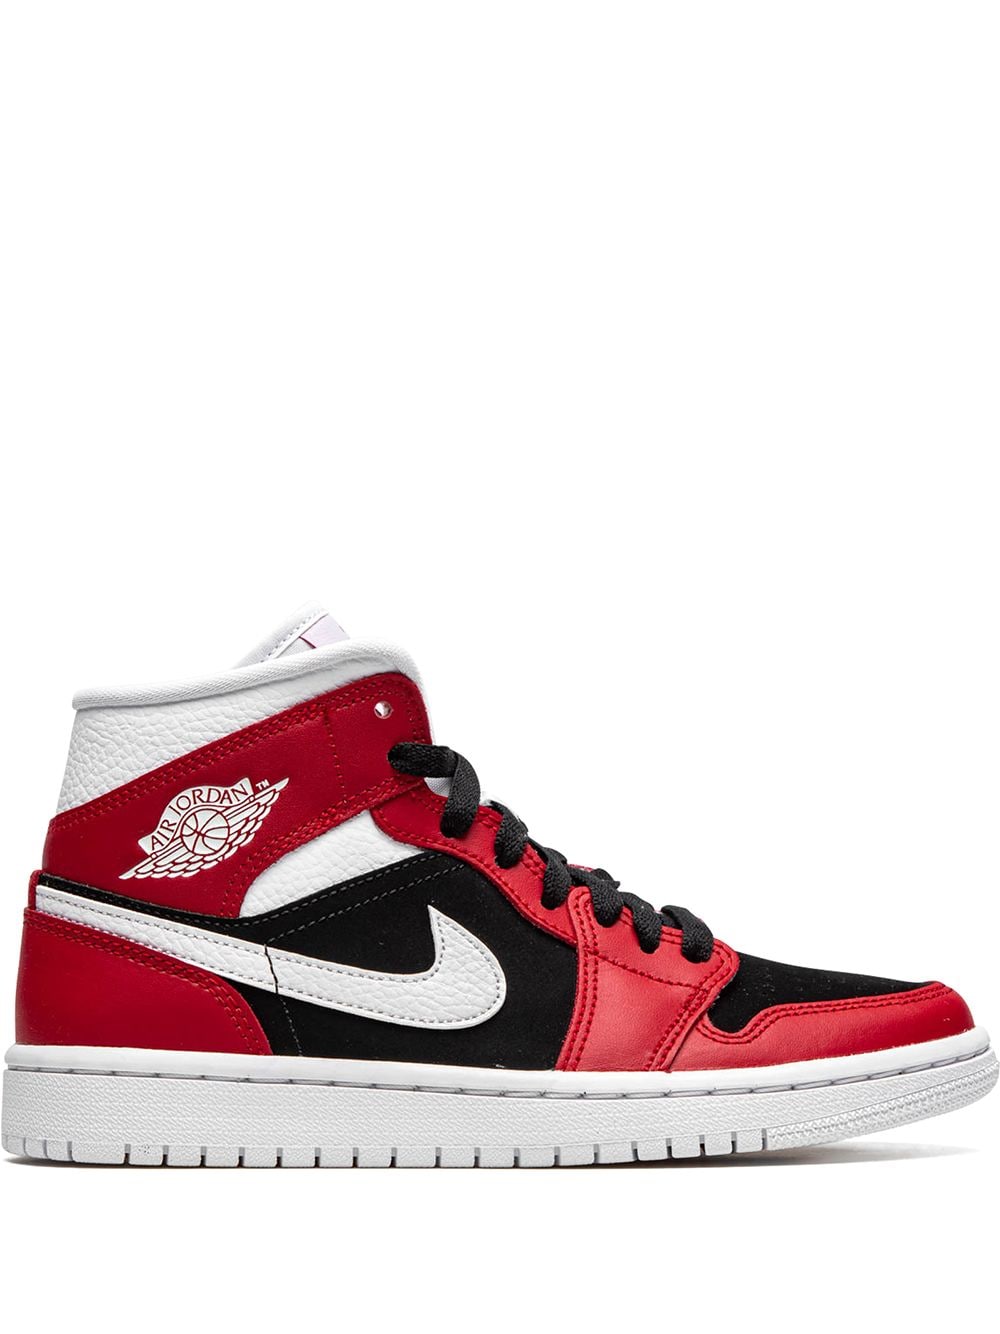 Jordan Air Jordan 1 Mid "Gym Red/Black" sneakers